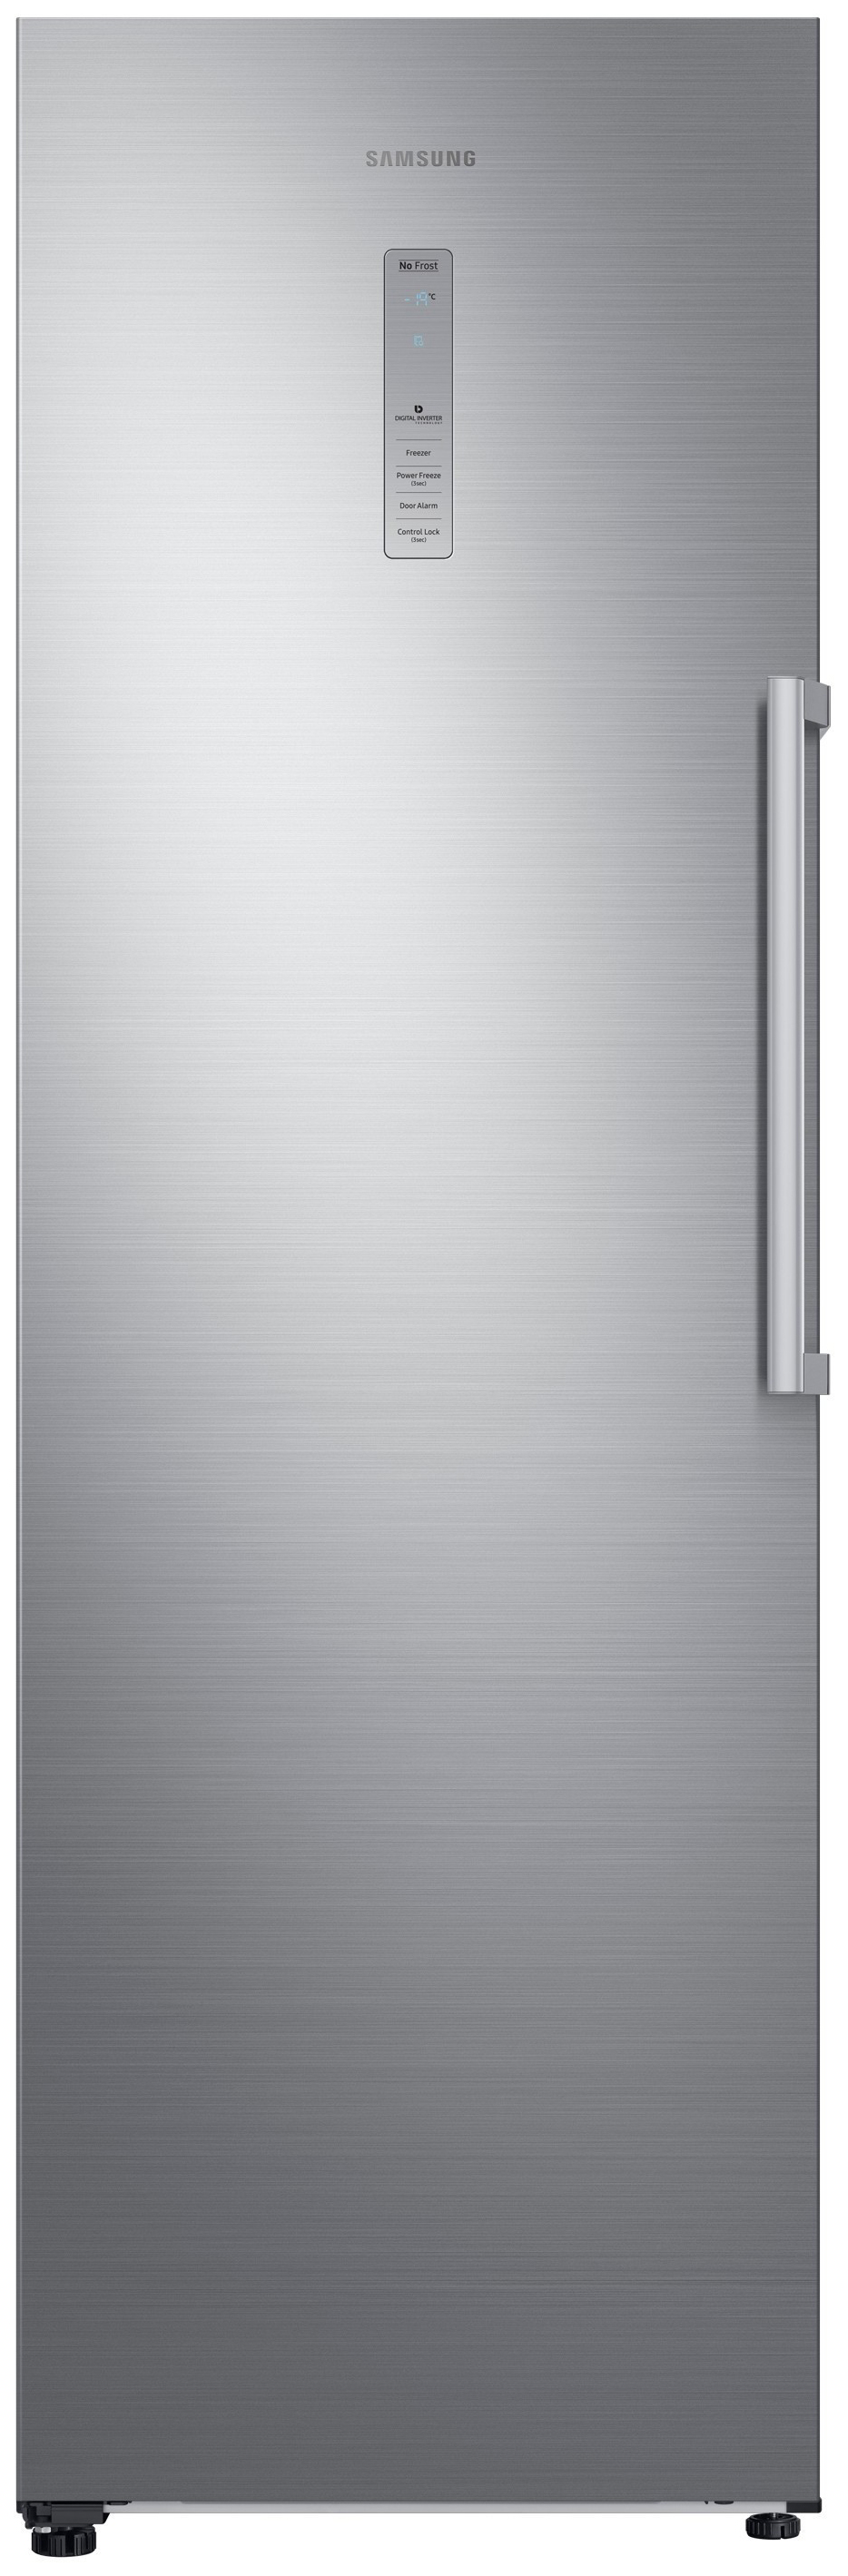 Холодильник Samsung RR 39 M 7140SAWT серебристый холодильник samsung rb30a30n0sa wt